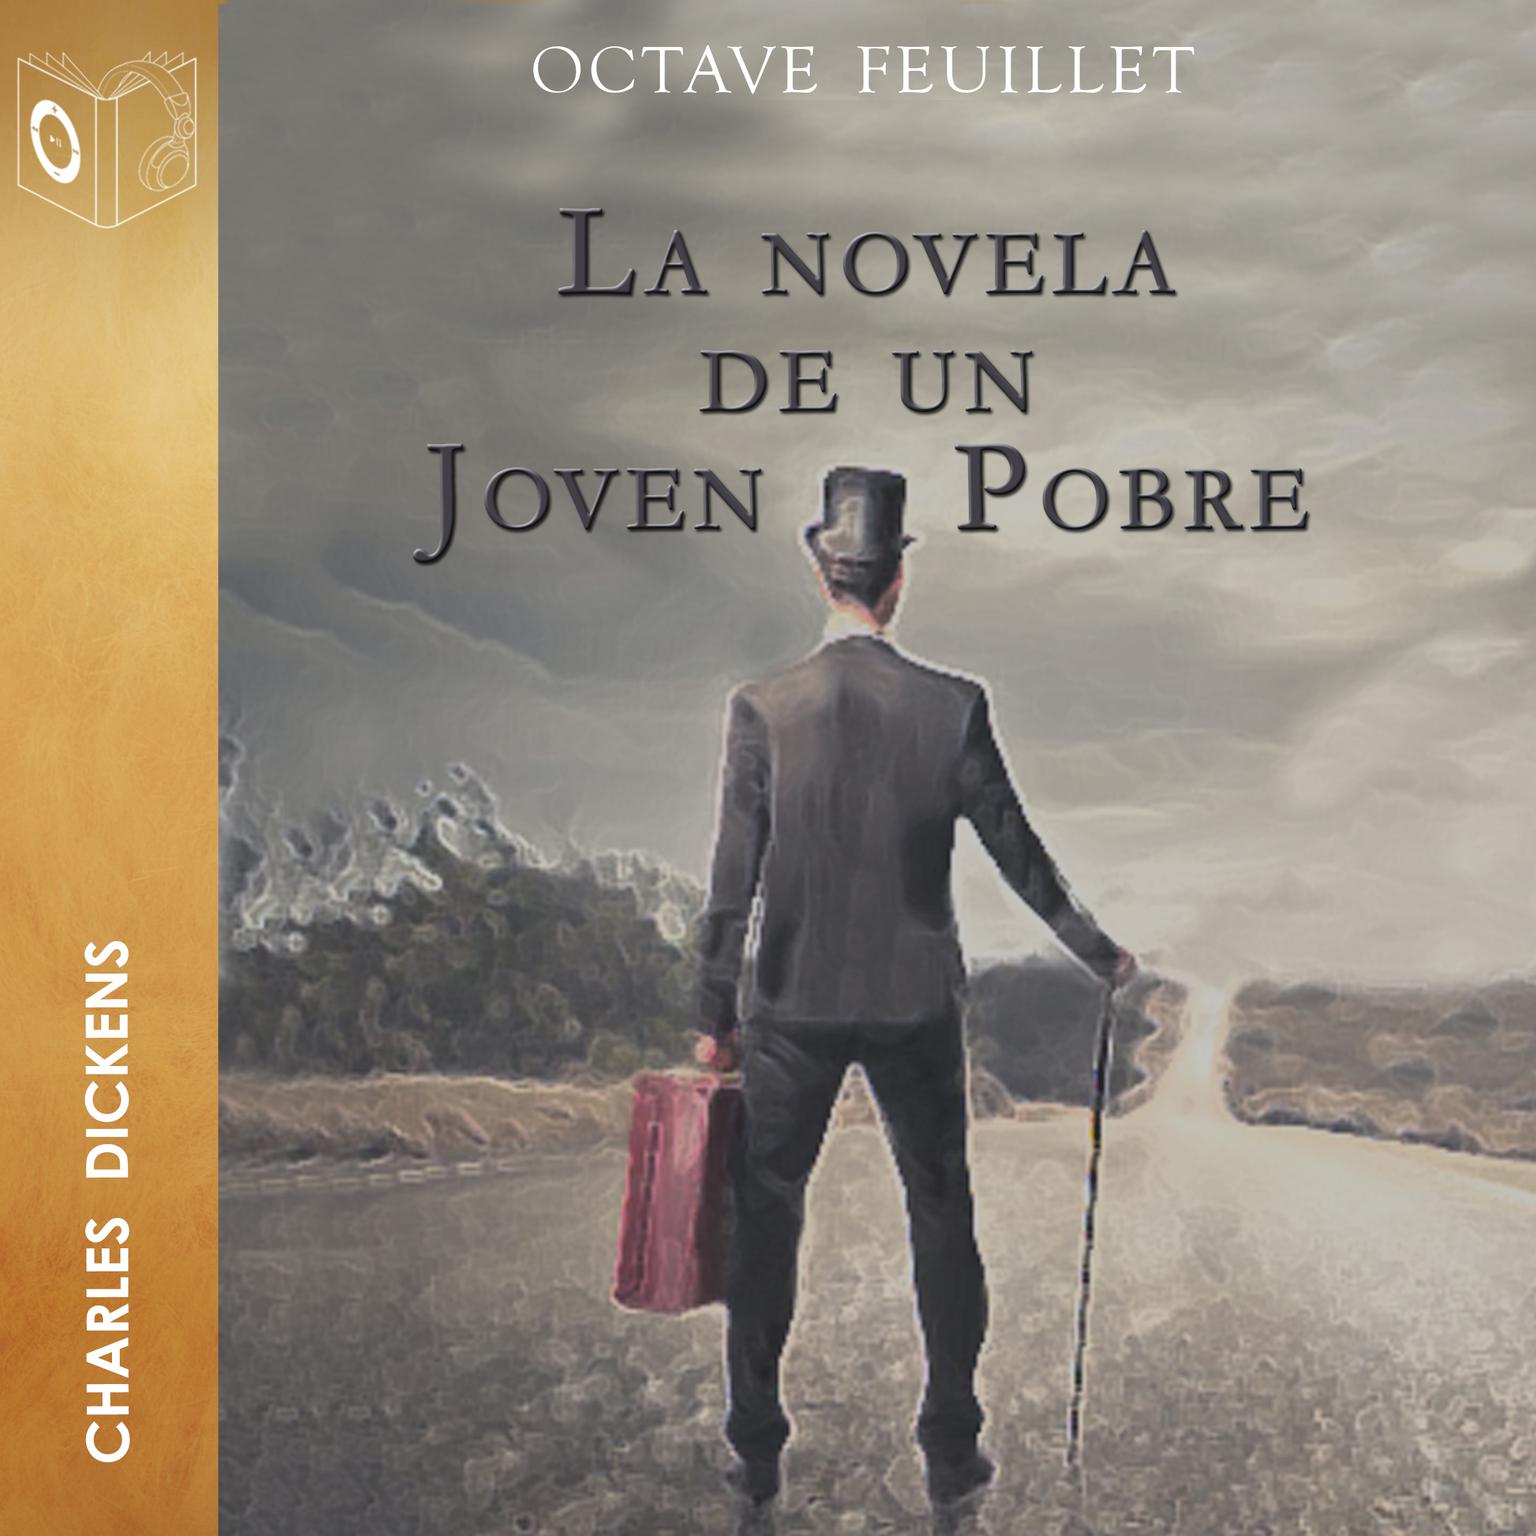 La novela de un joven pobre Audiobook, by Octave Feuillet